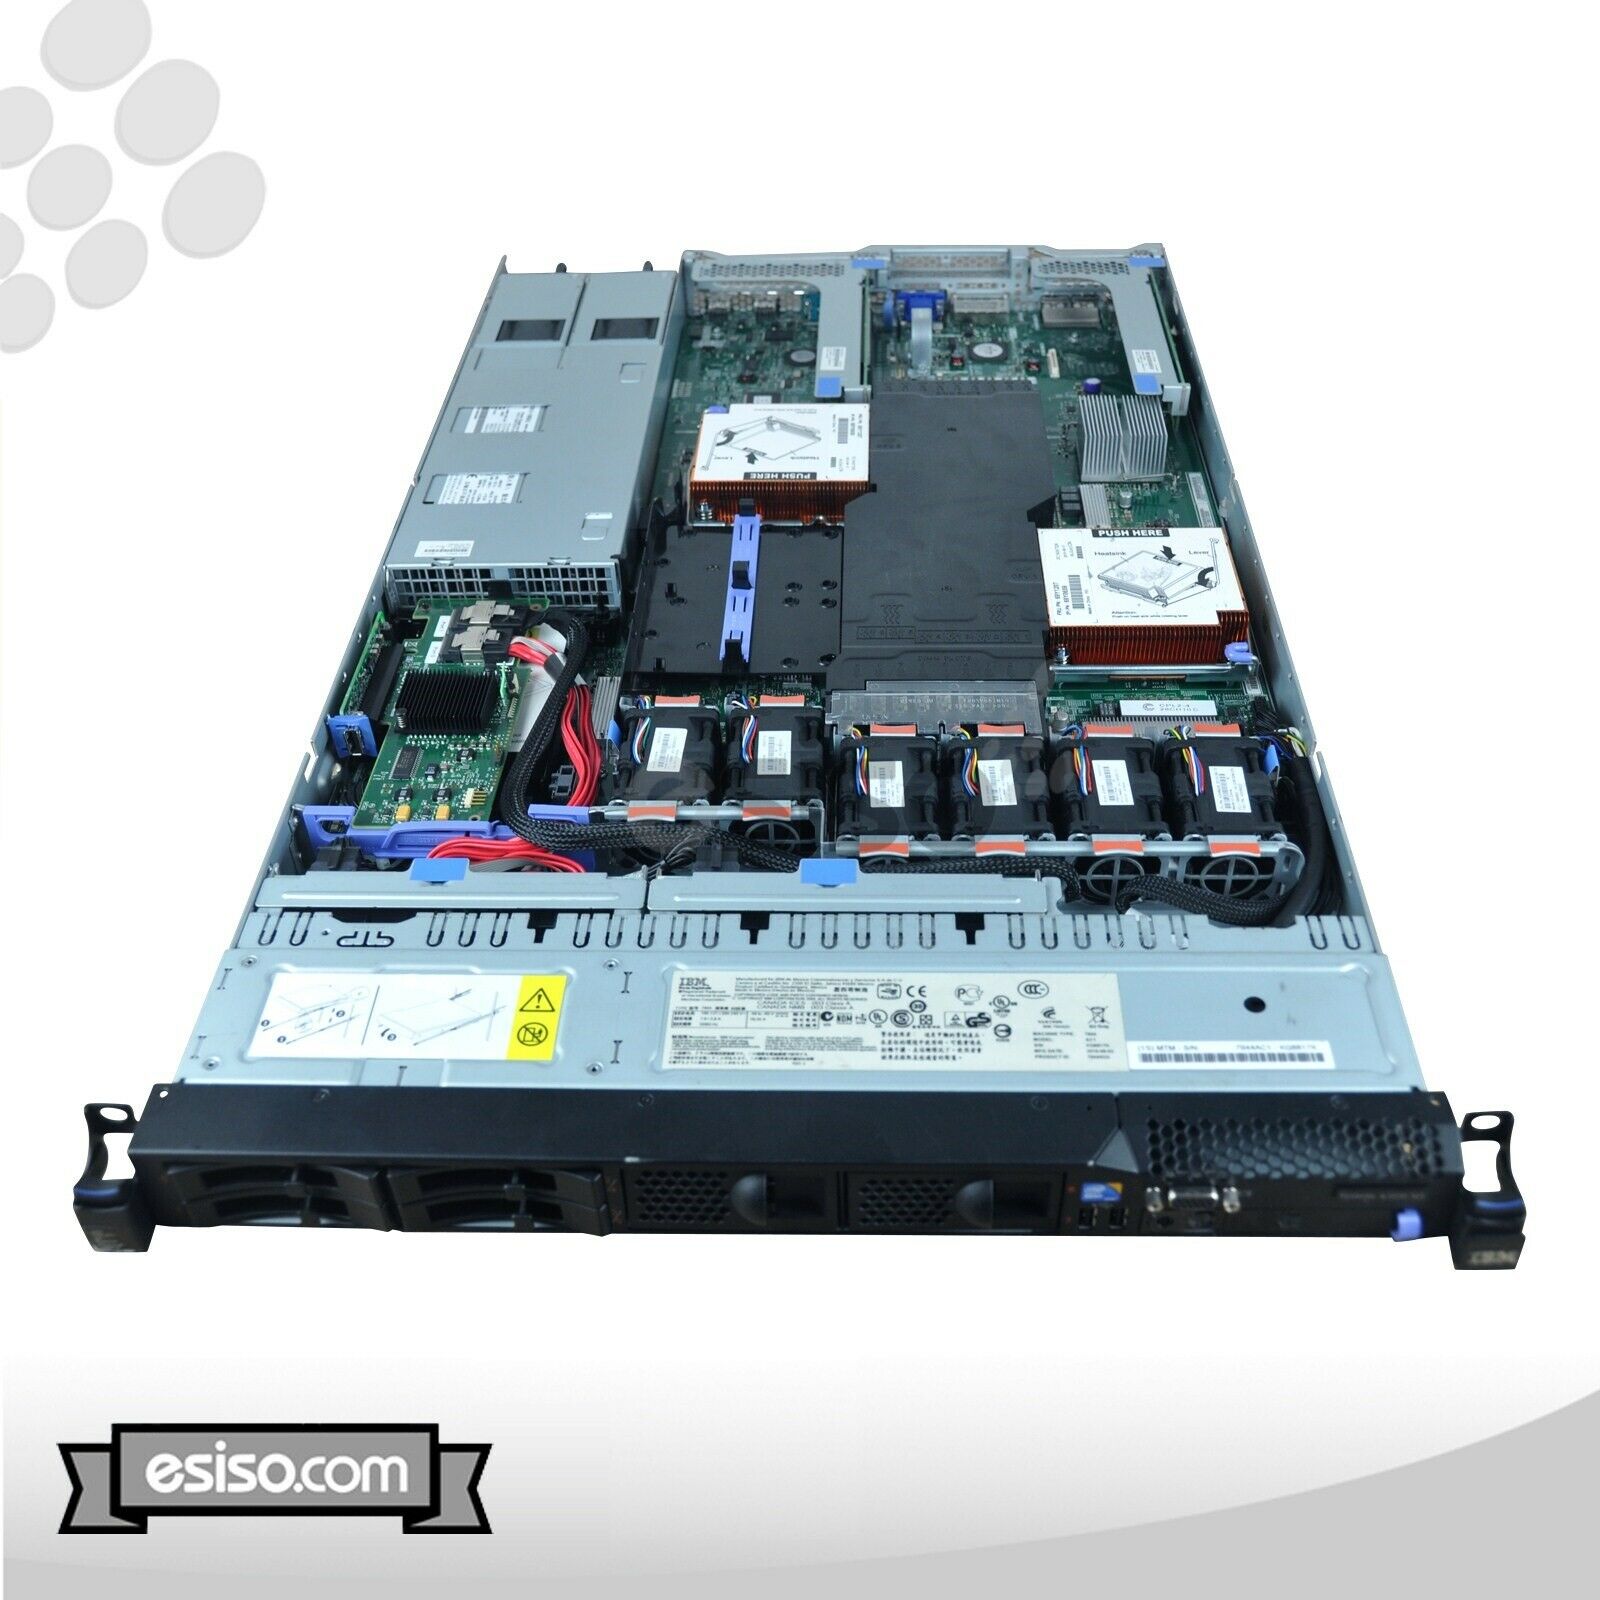 IBM System x3550 M3 7944-AC1 2x SIX CORE L5640 2.26GHz 48GB RAM 4x 160GB SSD